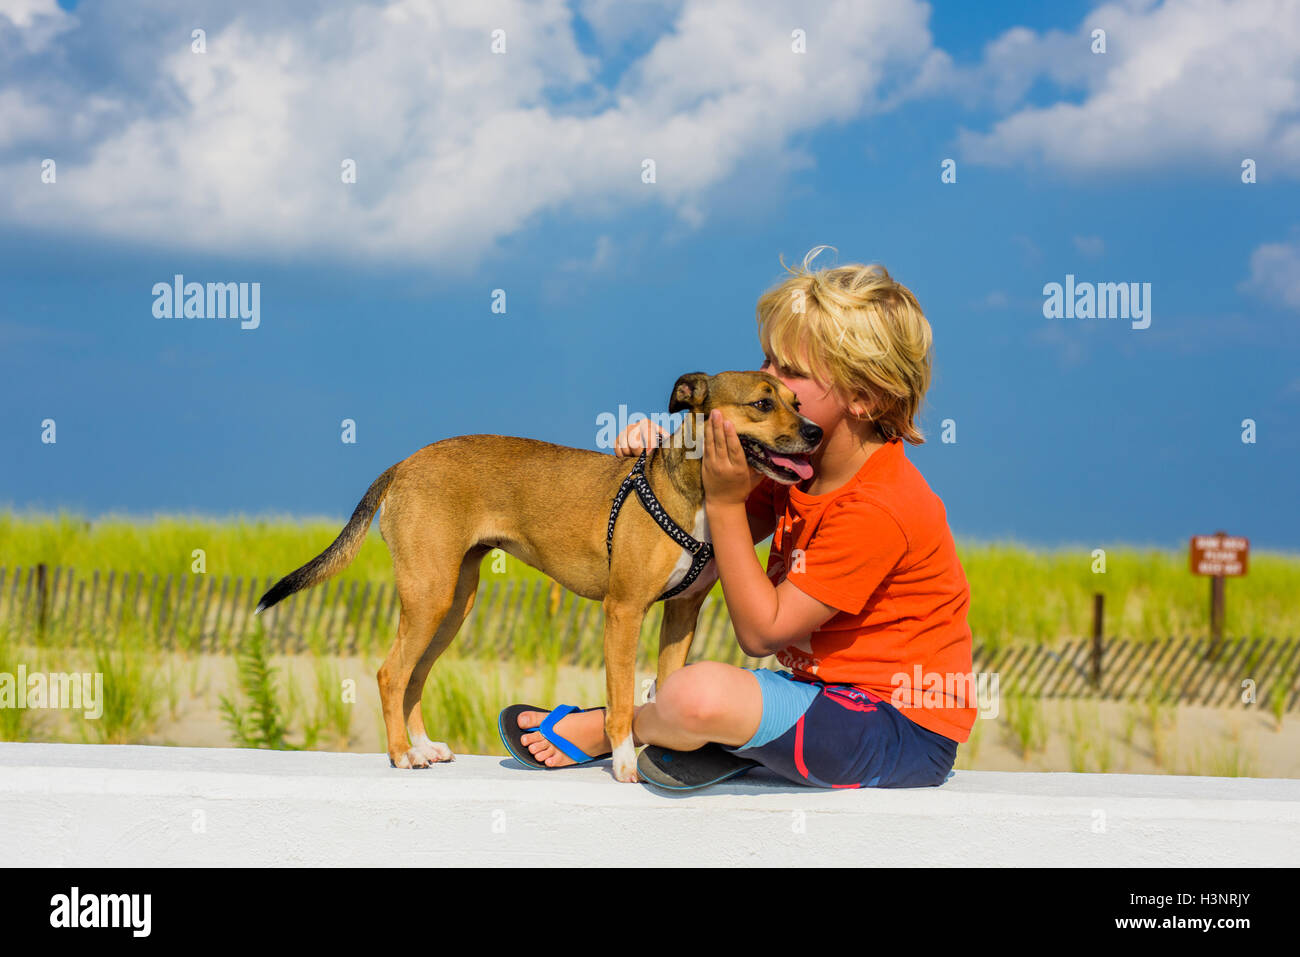 Jeune garçon à l'extérieur, serrant le chien Banque D'Images